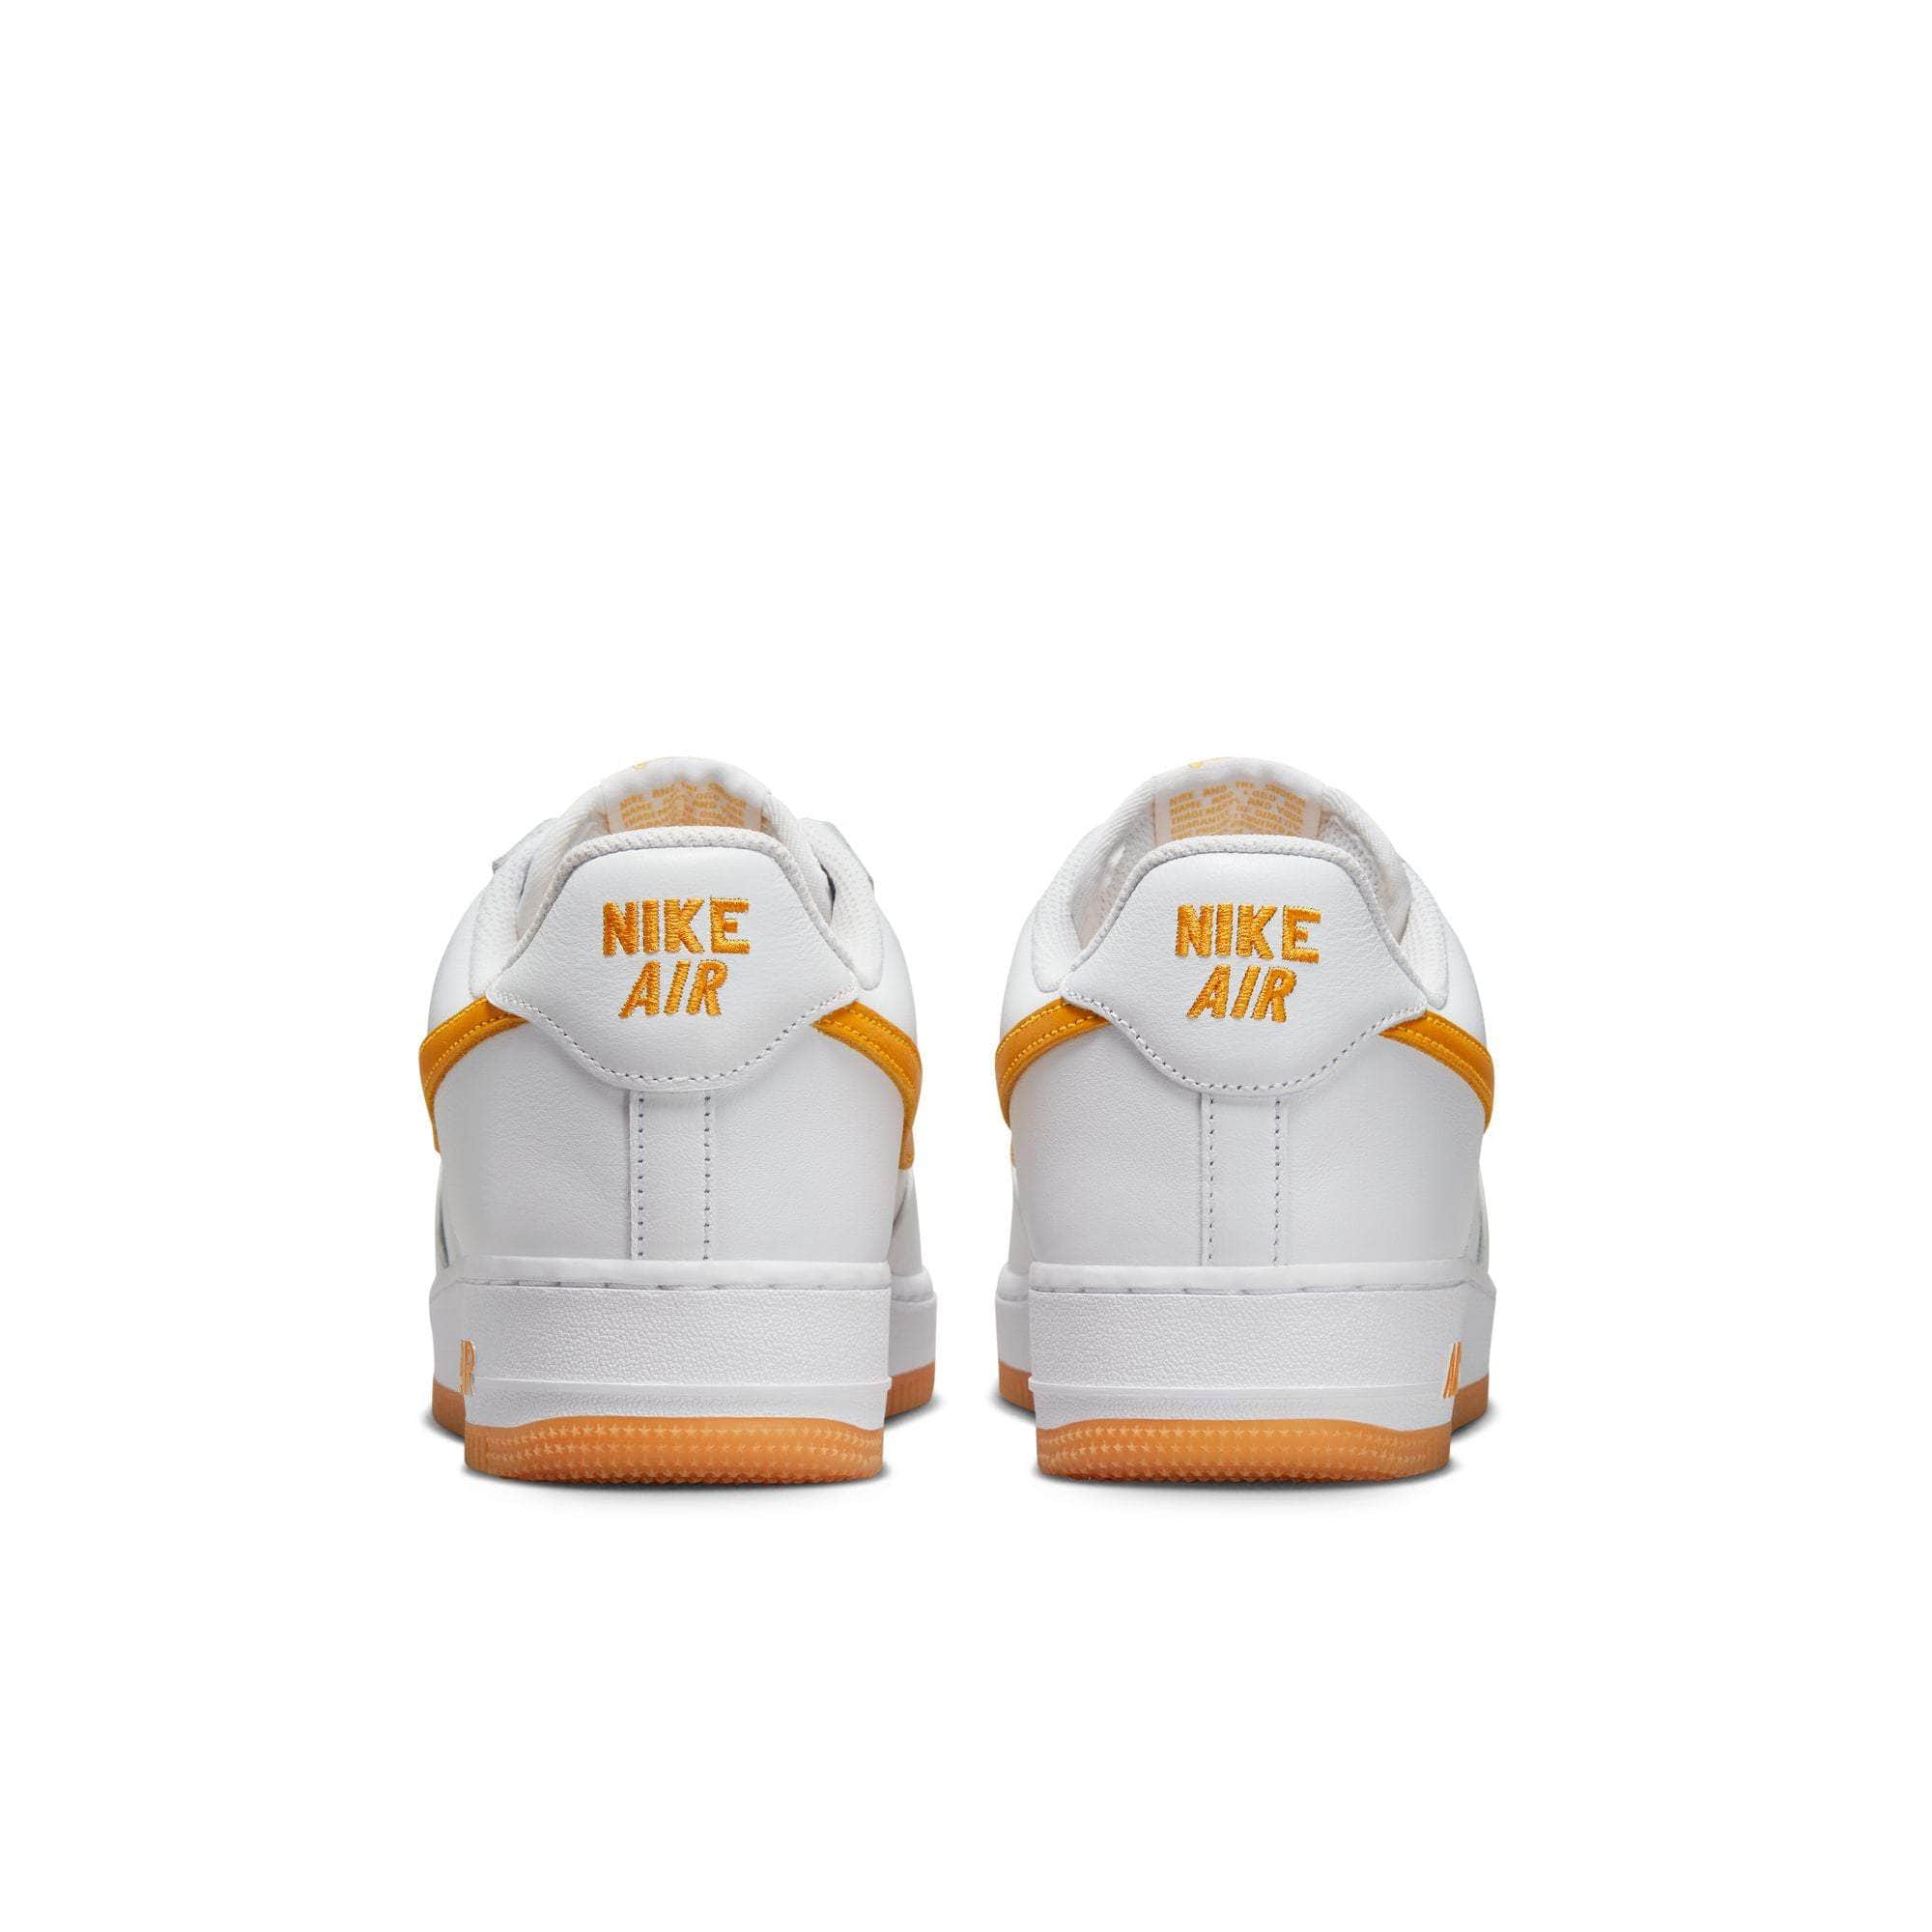 NIKE FOOTWEAR Nike Air Force 1 Low "Waterproof" - Men's